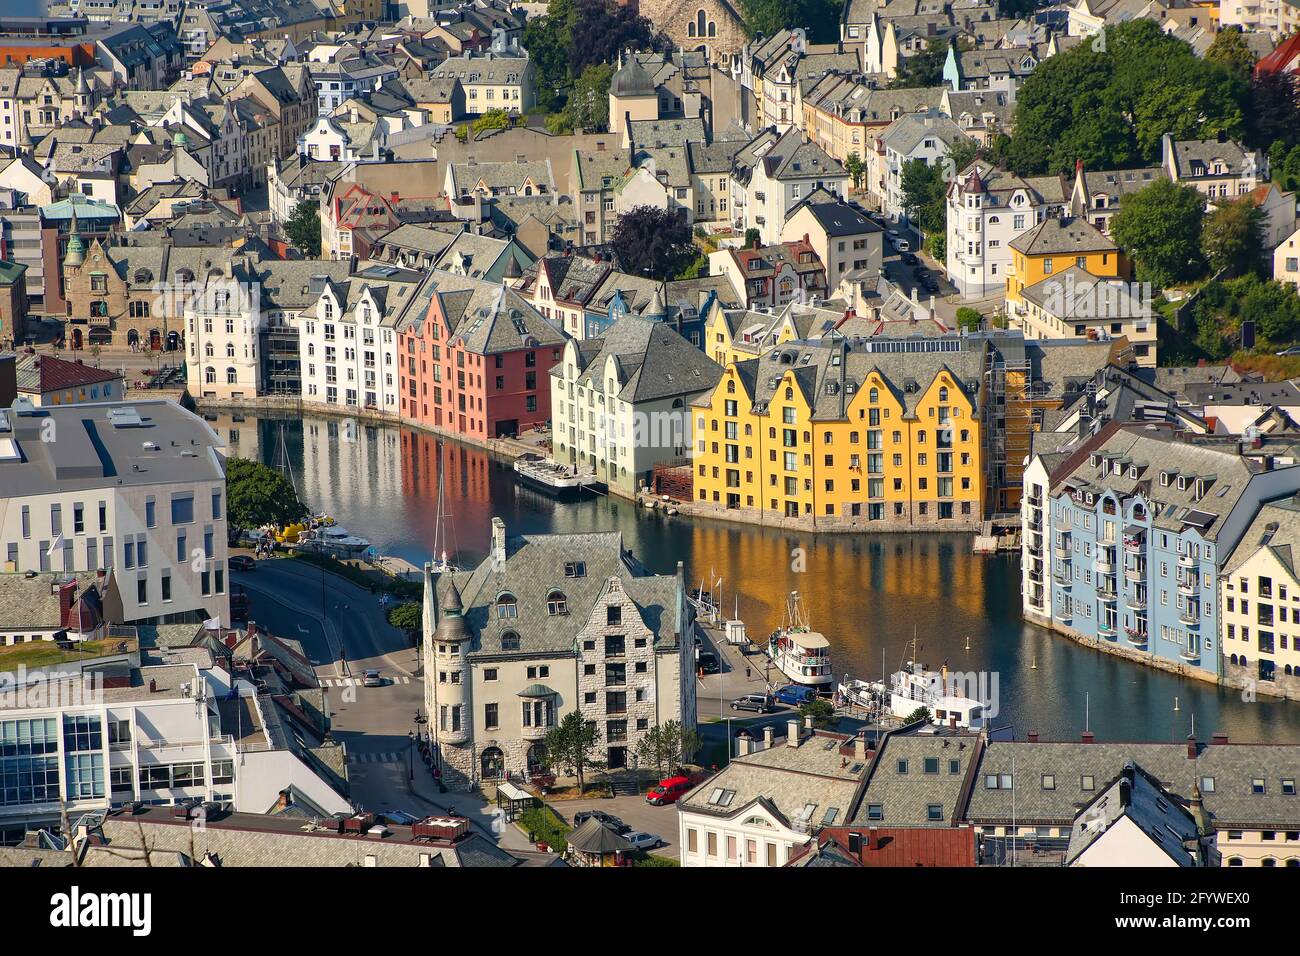 Nahaufnahme der schönen Gebäude im Stadtzentrum von oben. Jugendstil-Architektur und Kanäle aus der Sicht Aksla, Alesund, Norwegen. Stockfoto